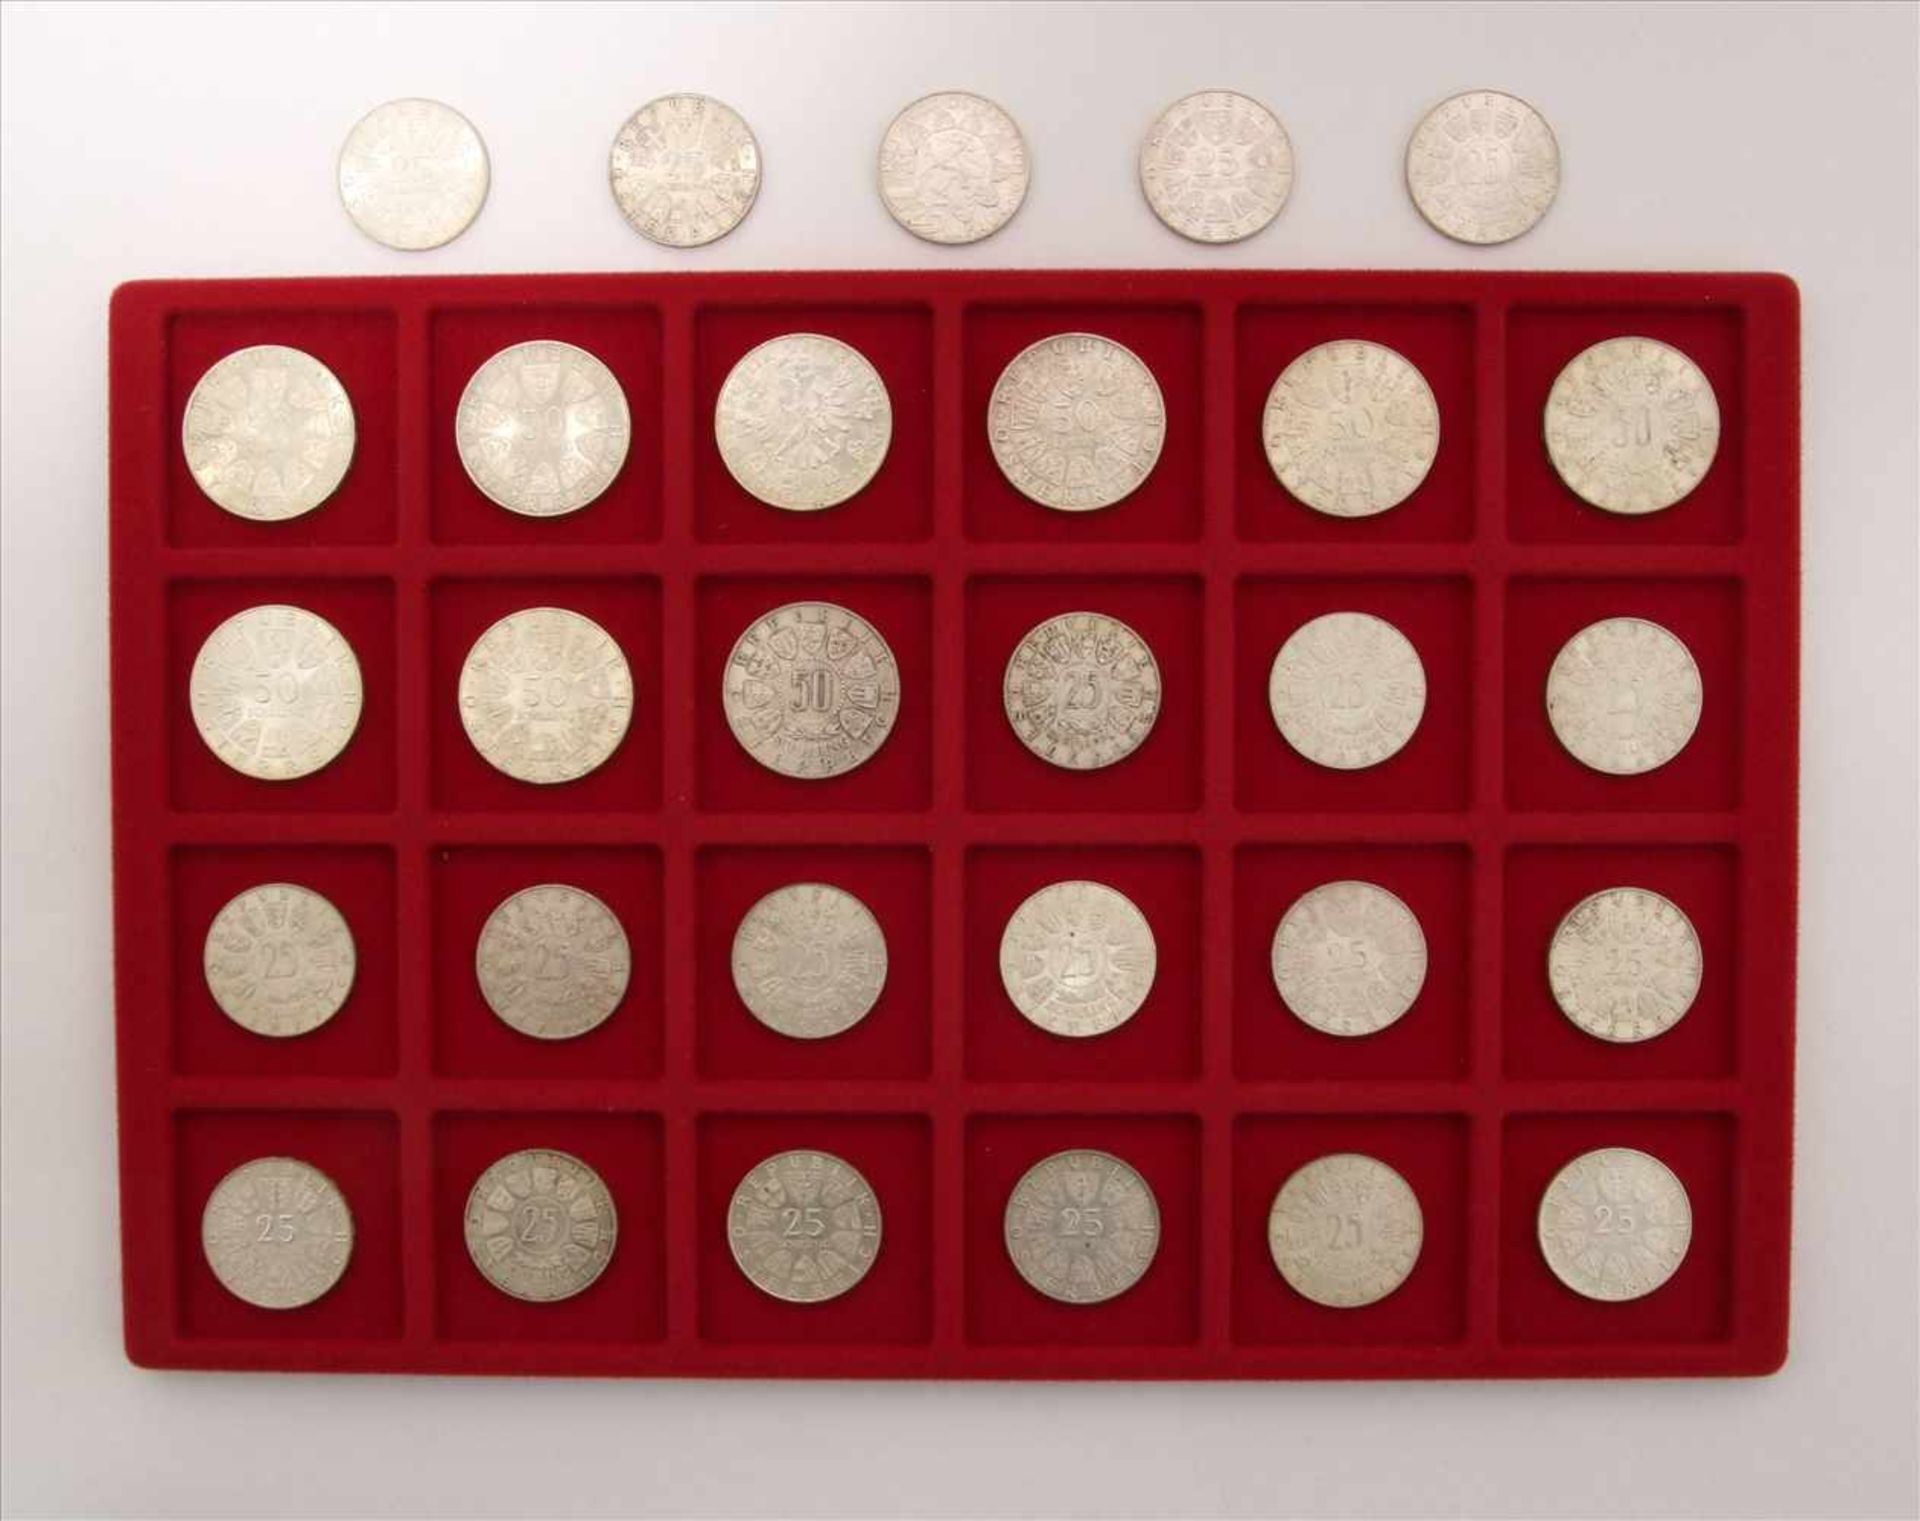 Konvolut MünzenÖsterreich. 9 diverse 50-Schilling Münzen und 20 diverse 25-Schilling Münzen. Zustand - Bild 2 aus 2